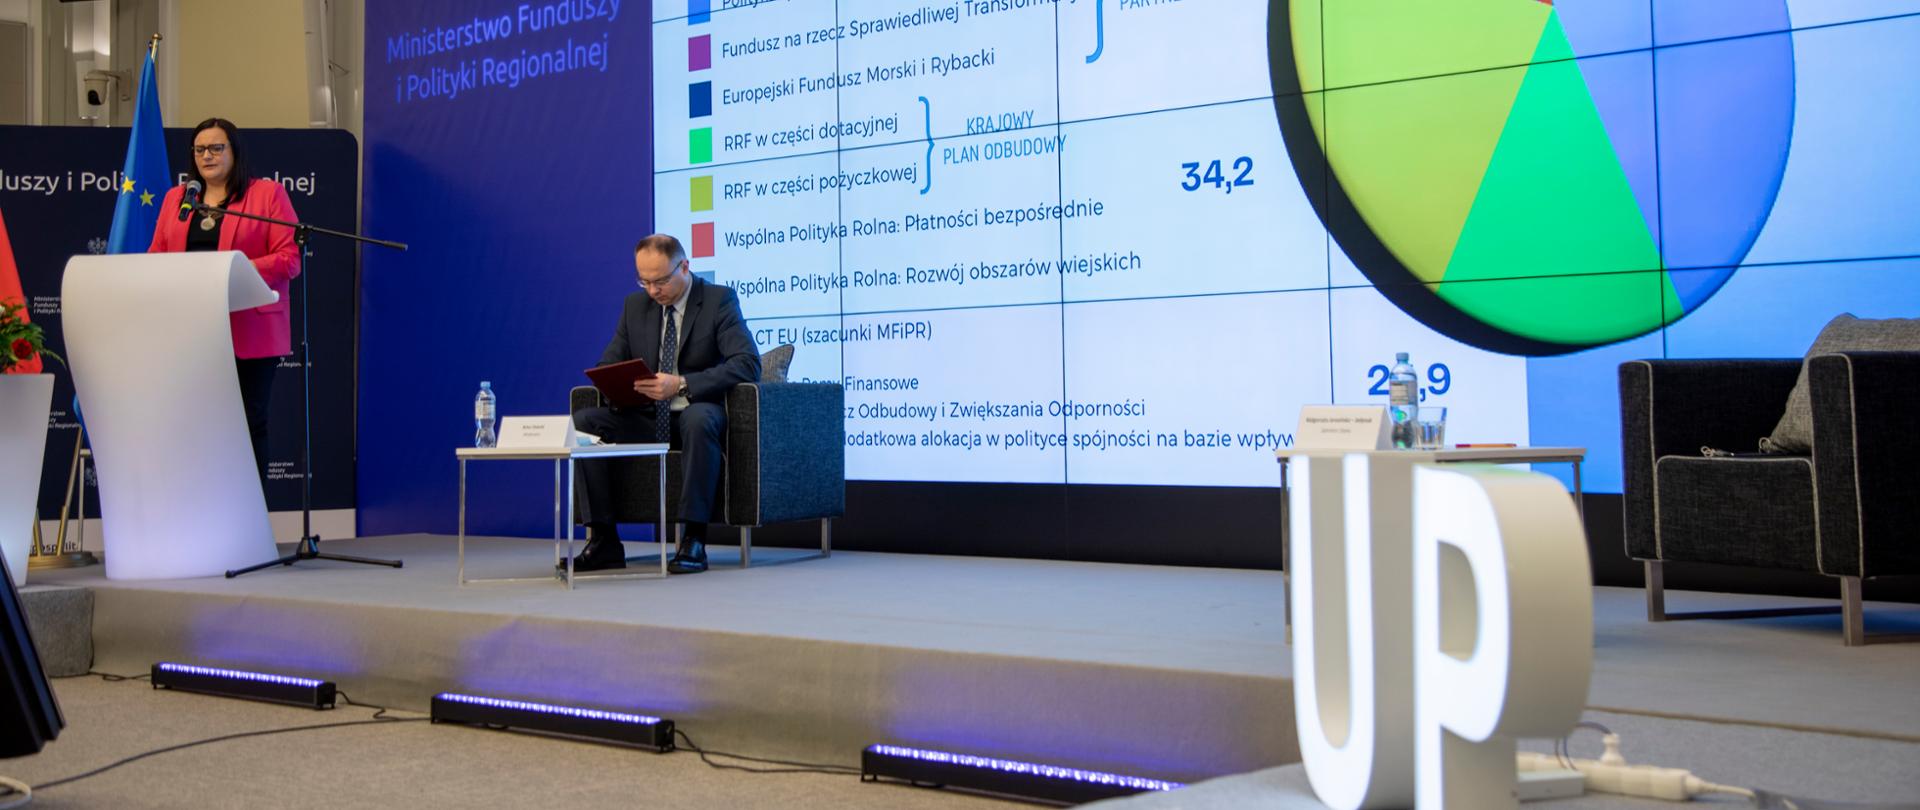 Na zdjęciu stoi przy mównicy wiceminister Małgorzata Jarosińska-Jedynak, z tyłu jasny ekran z diagramem kołowym.